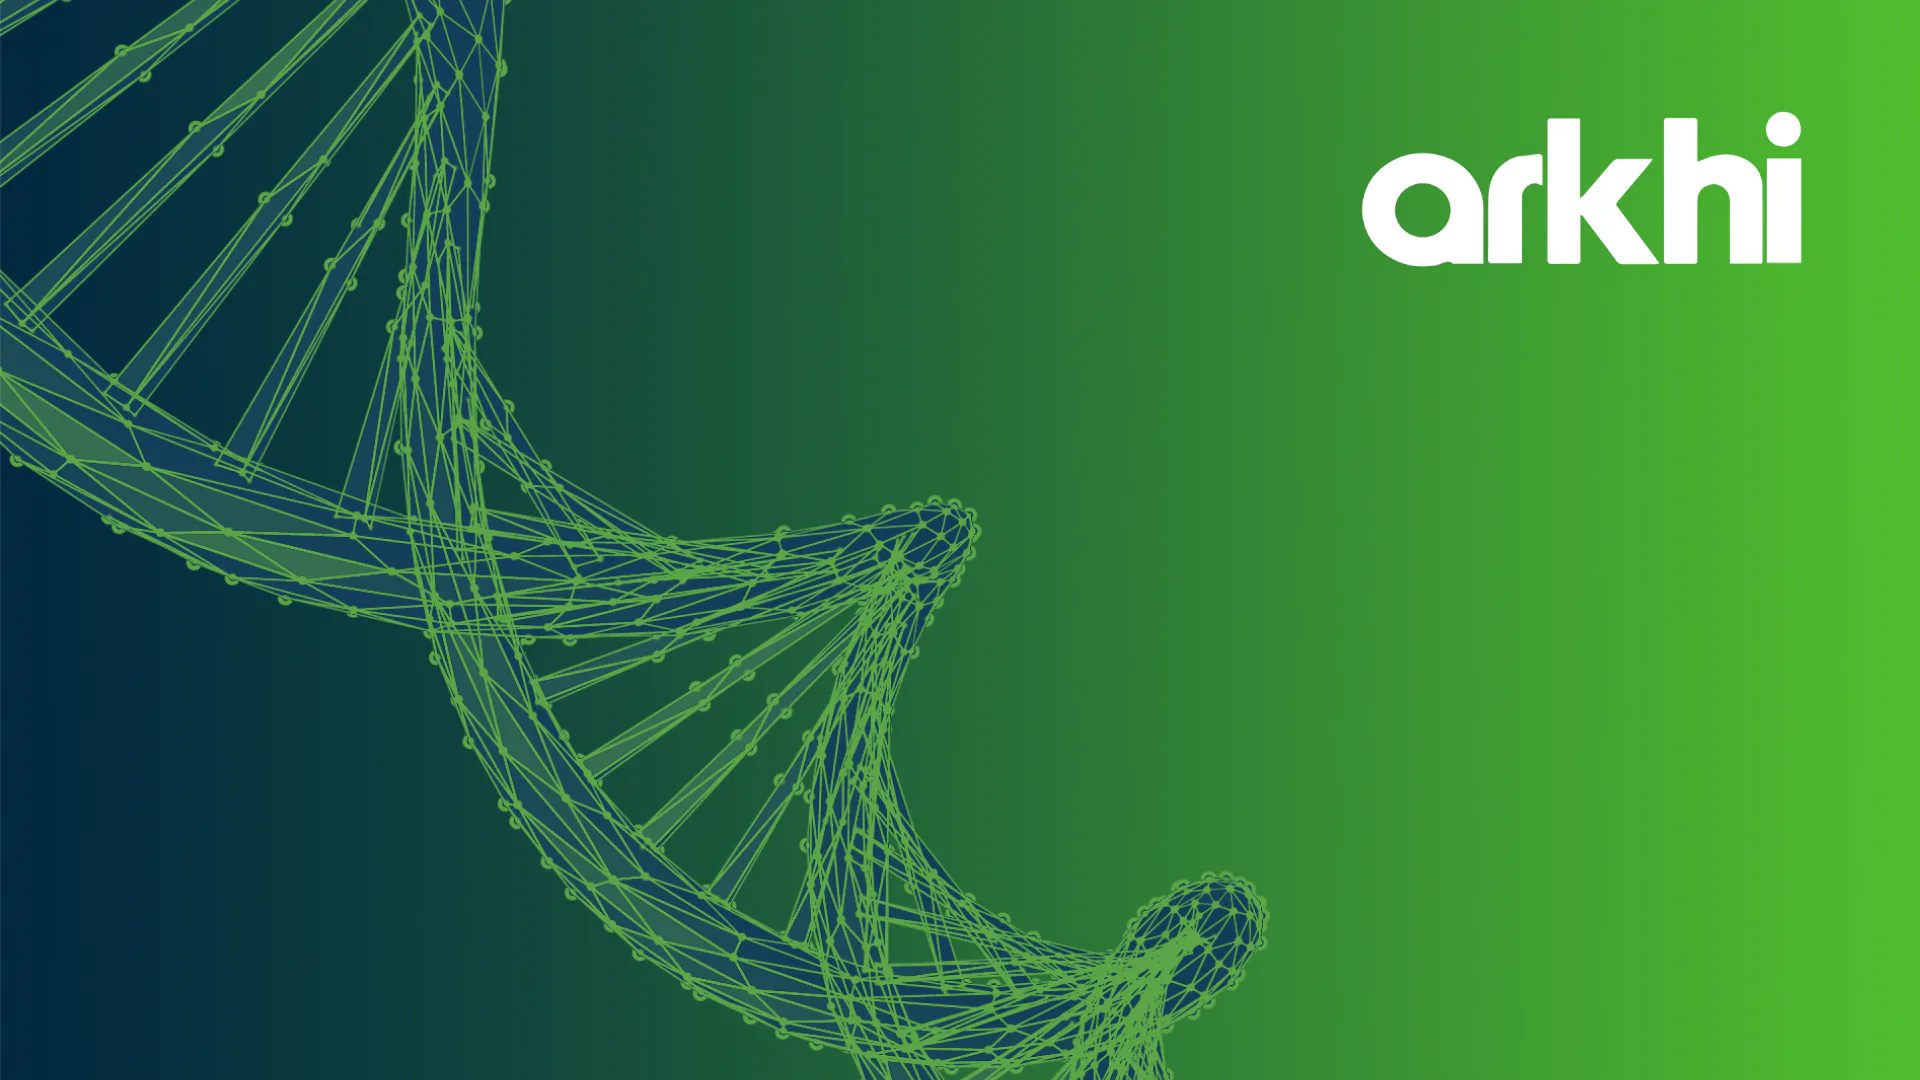 Imagem com fundo verde, um elemento gráfico de DNA e o logo da Arkhi.